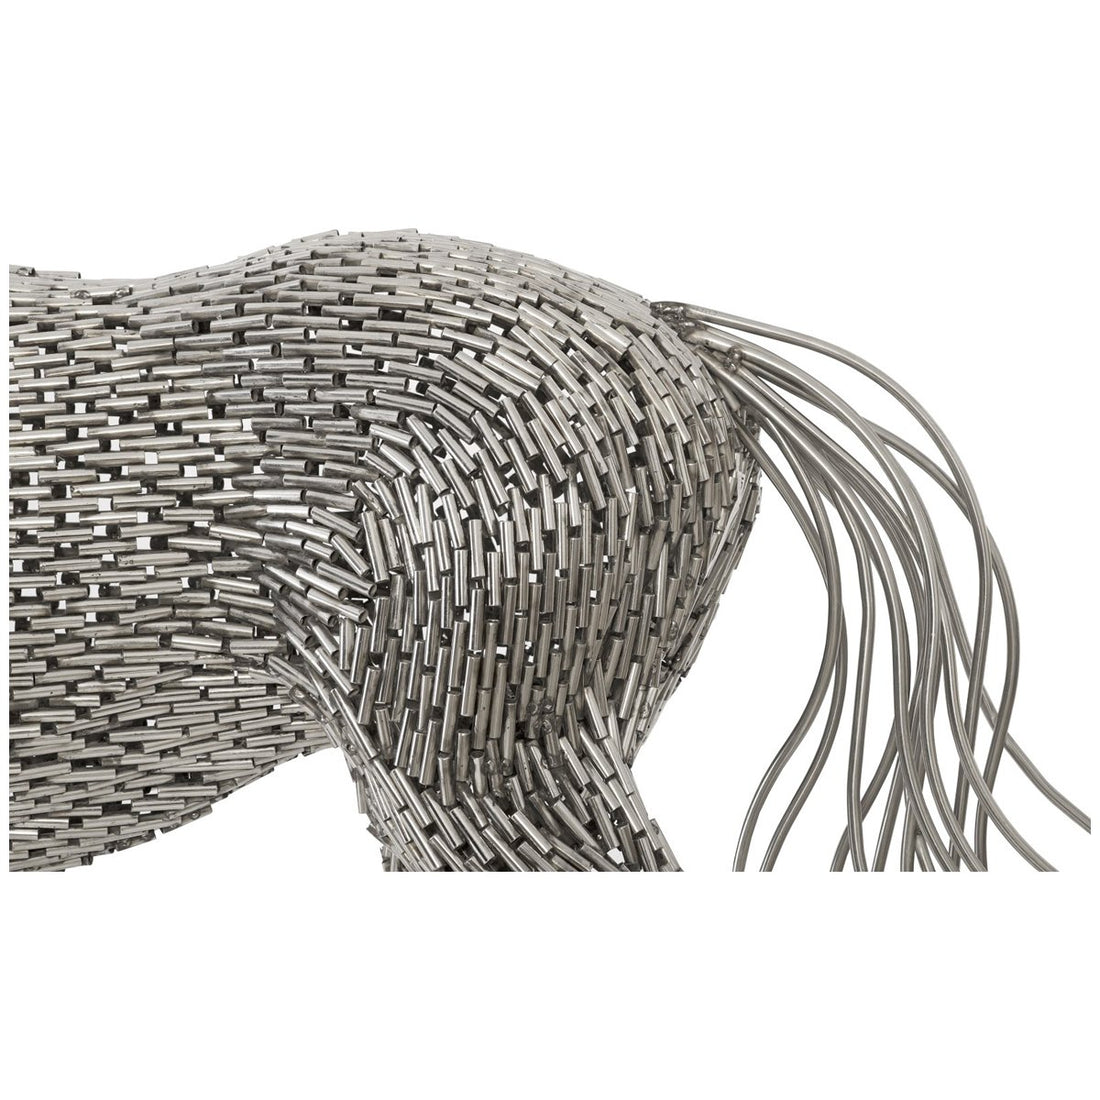 820 Wire sculpture ideas  wire sculpture, sculpture, wire art